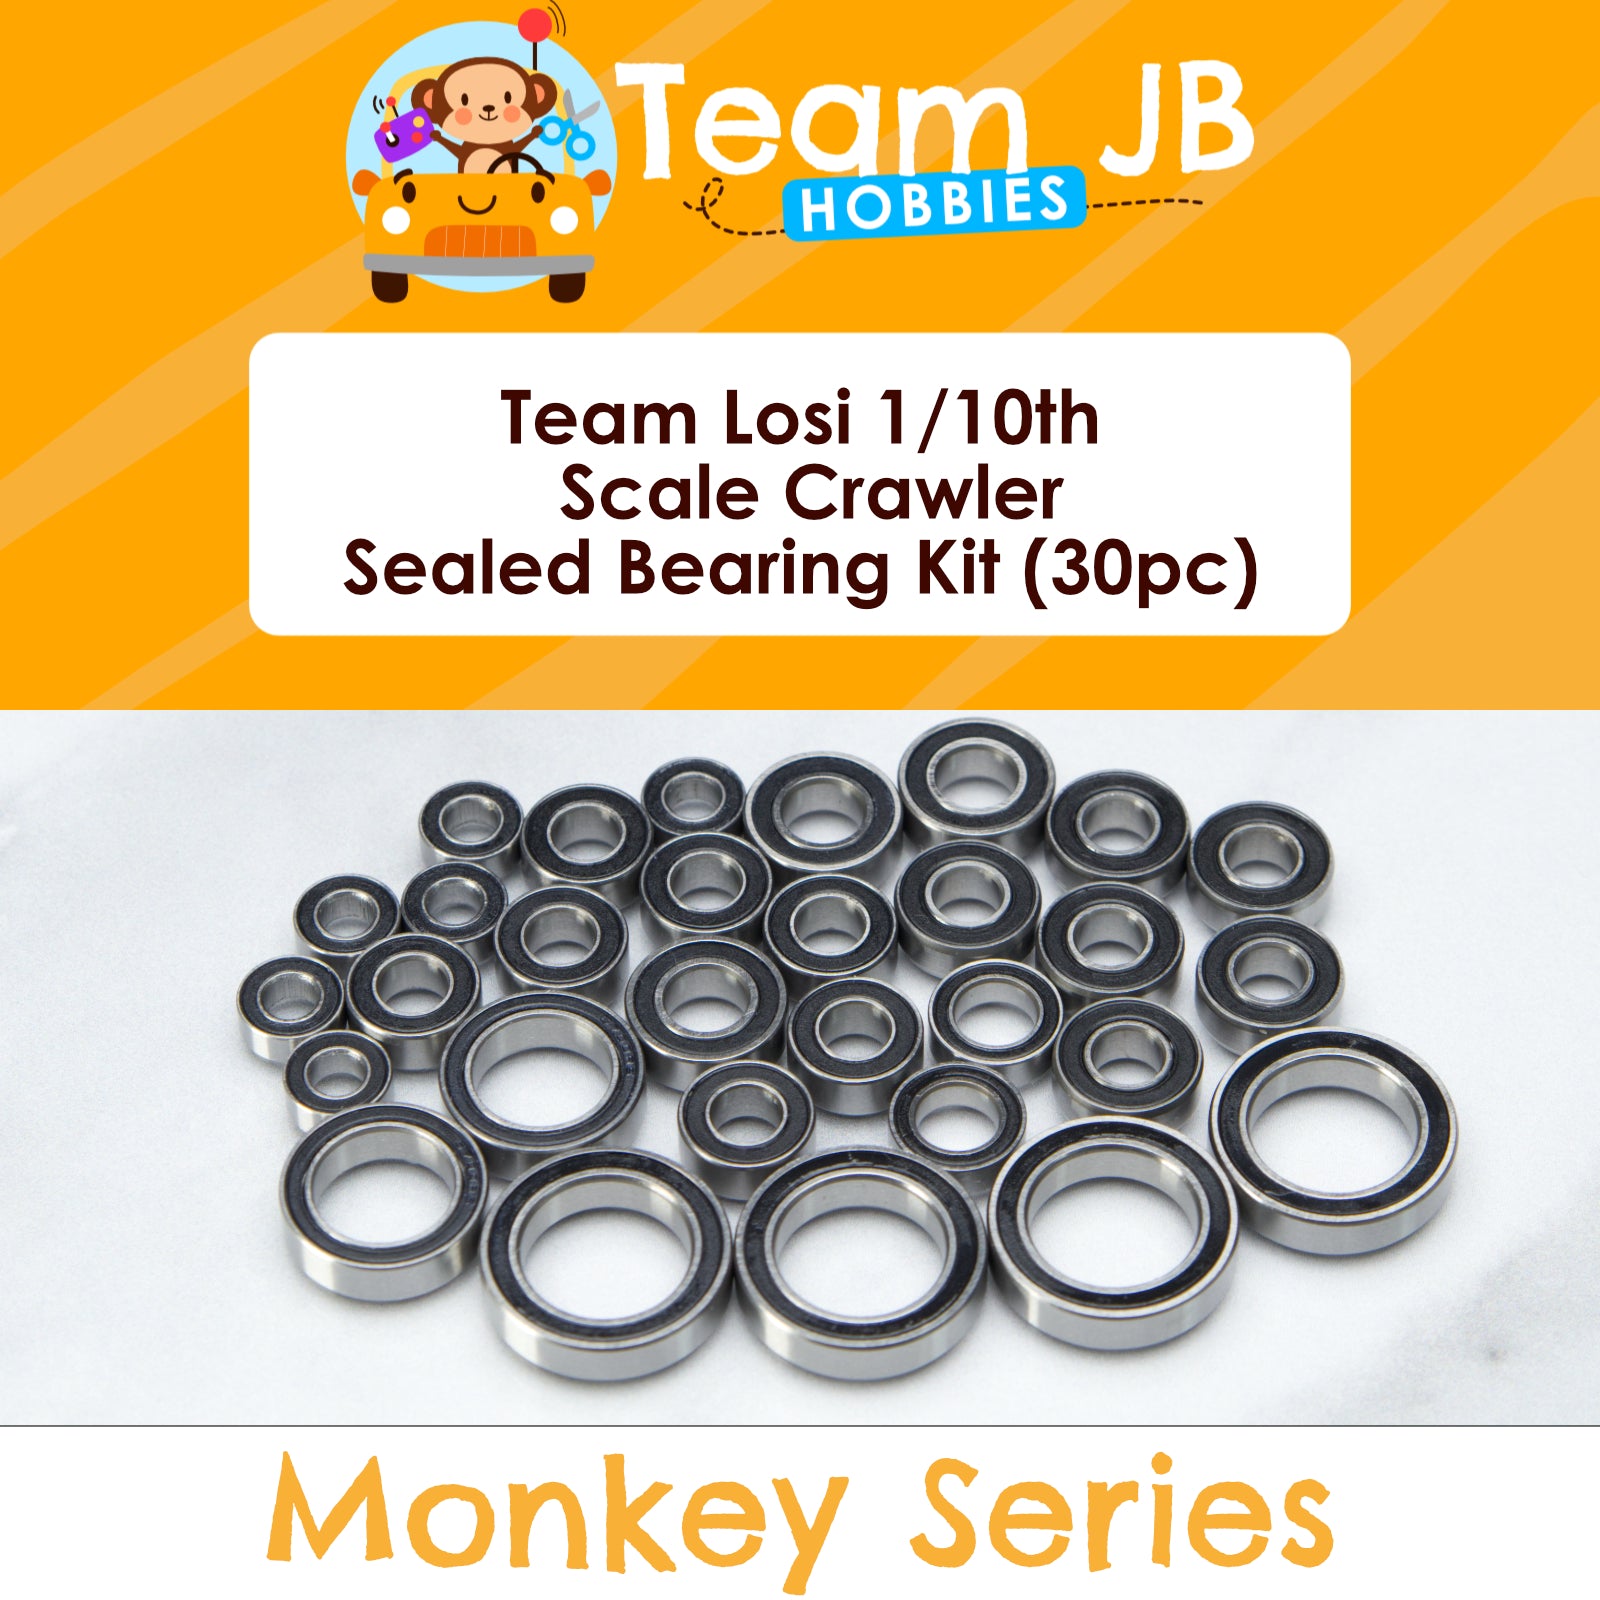 Team Losi 1/10th Scale Crawler - Sealed Bearing Kit